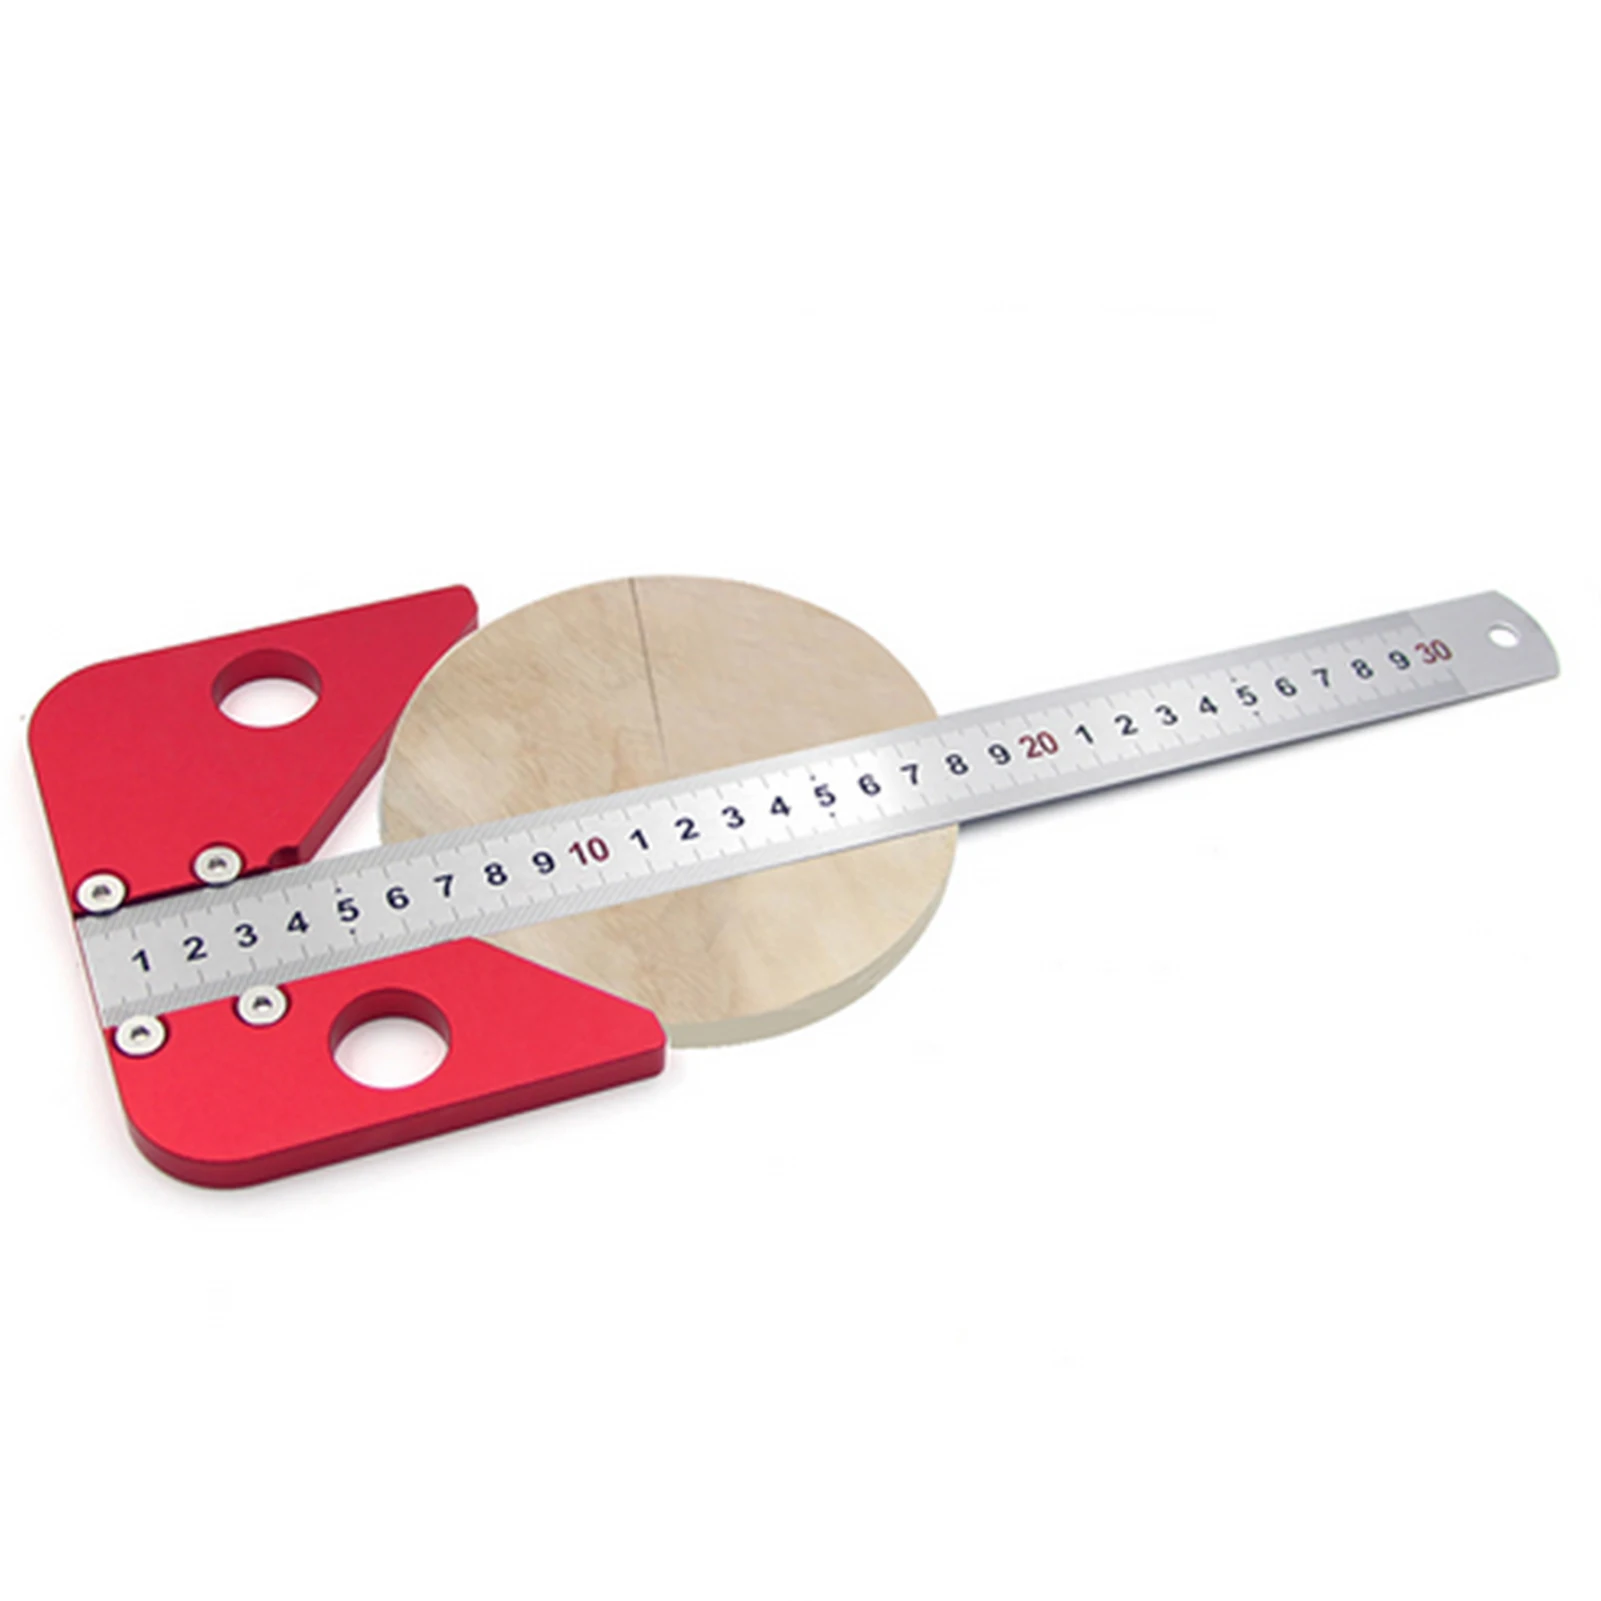 

Центр Scribe центр Finder измерительный инструмент деревообрабатывающая линия Калибр 45/90 градусов правый угол линейный датчик плотник линейка